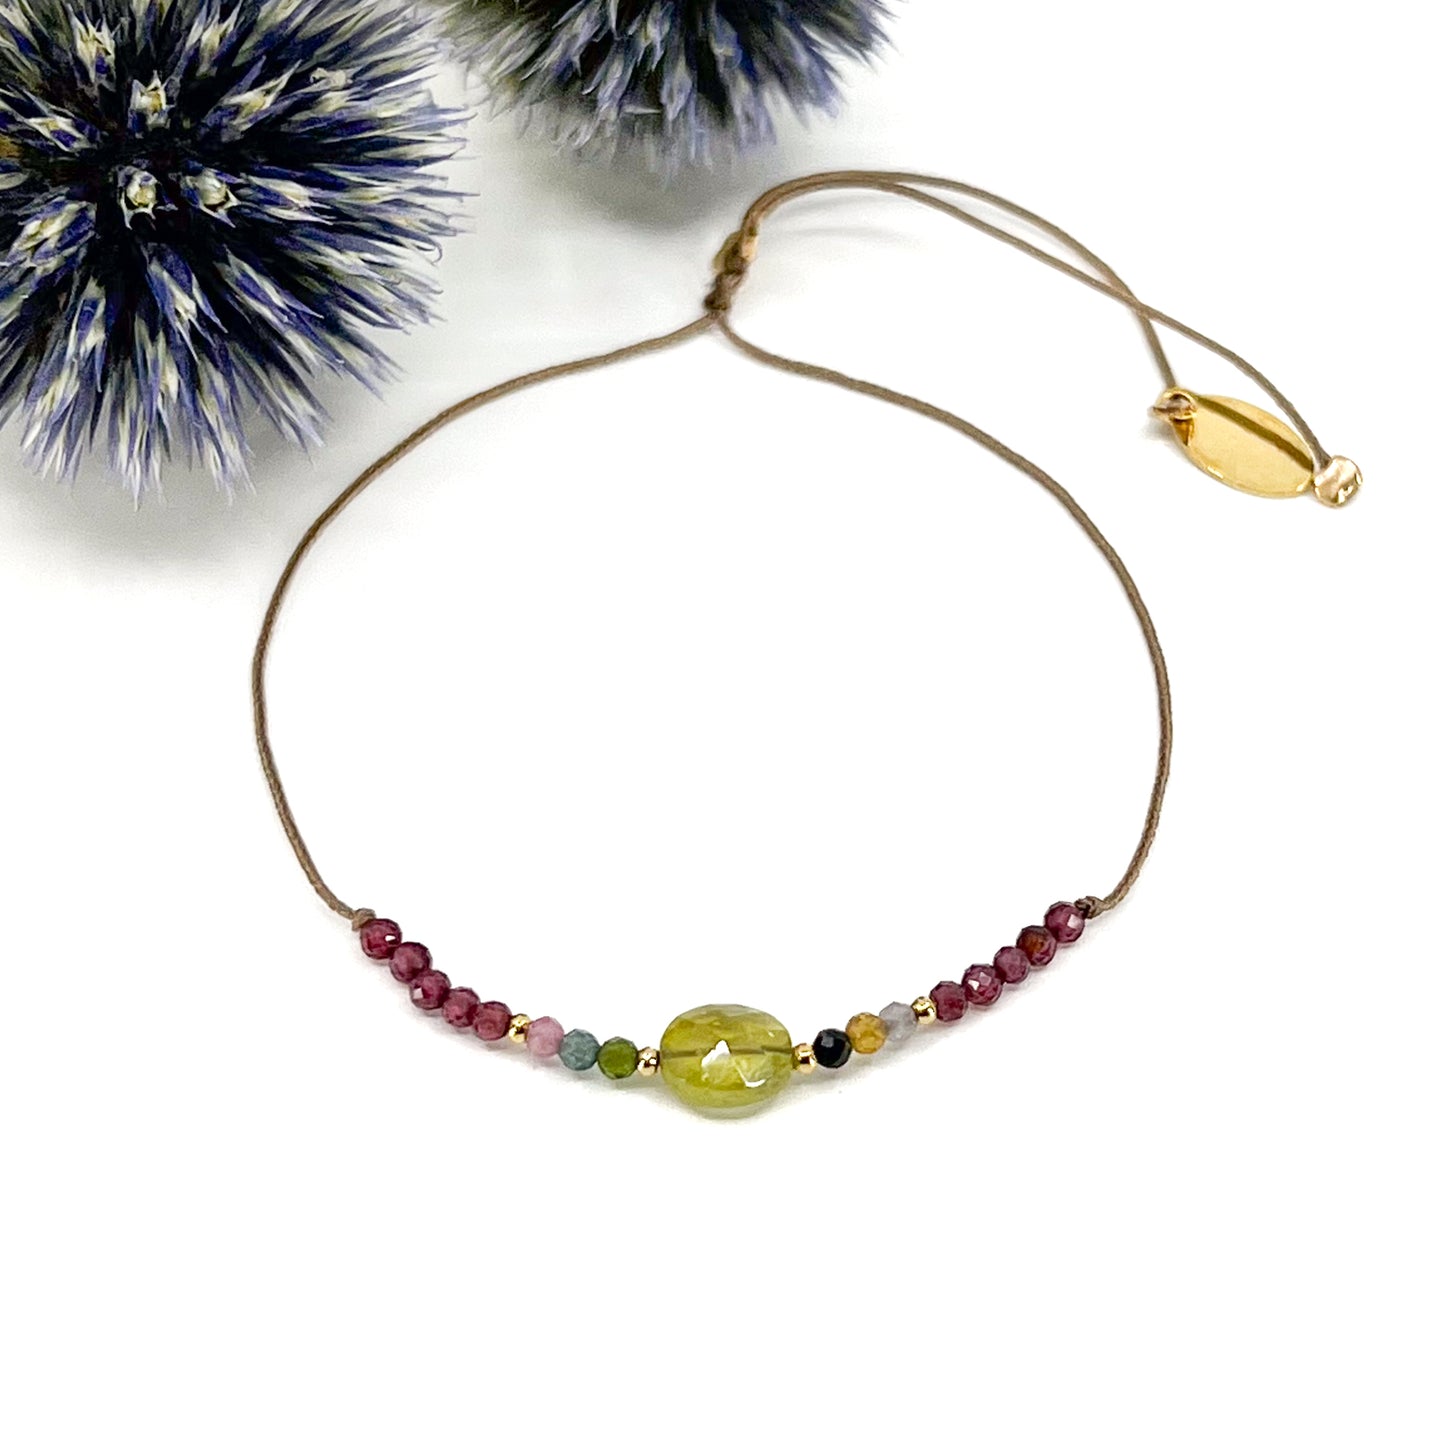 Bracelet ajustable composé d'une belle pierre fine naturelle de Tourmaline entourée de petites perles colorées de Tourmaline